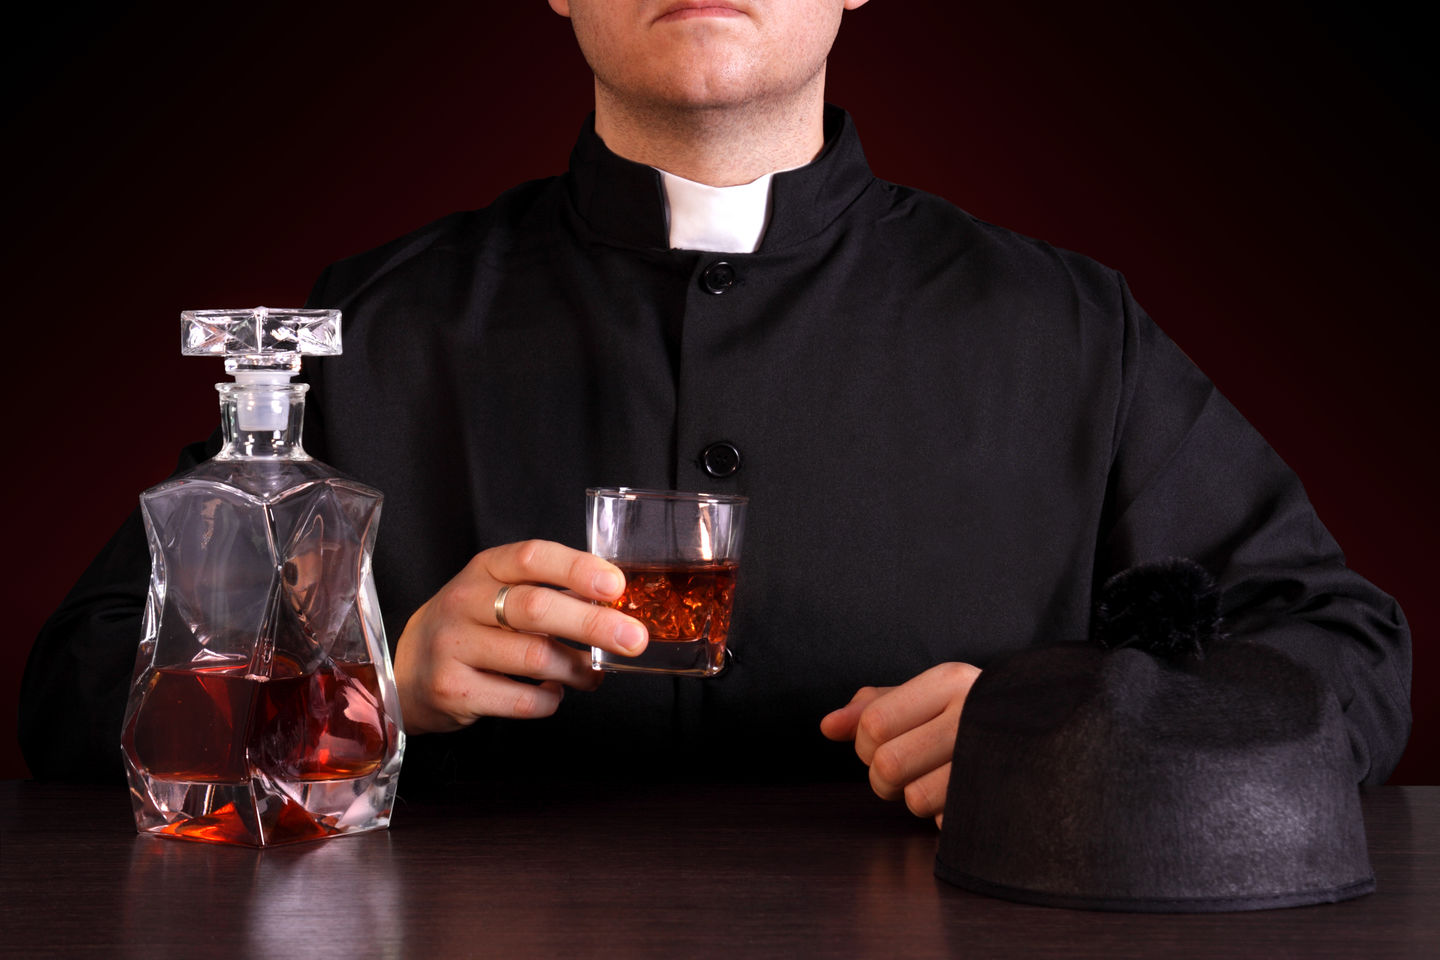 Пьянство дисквалифицирует пастора?